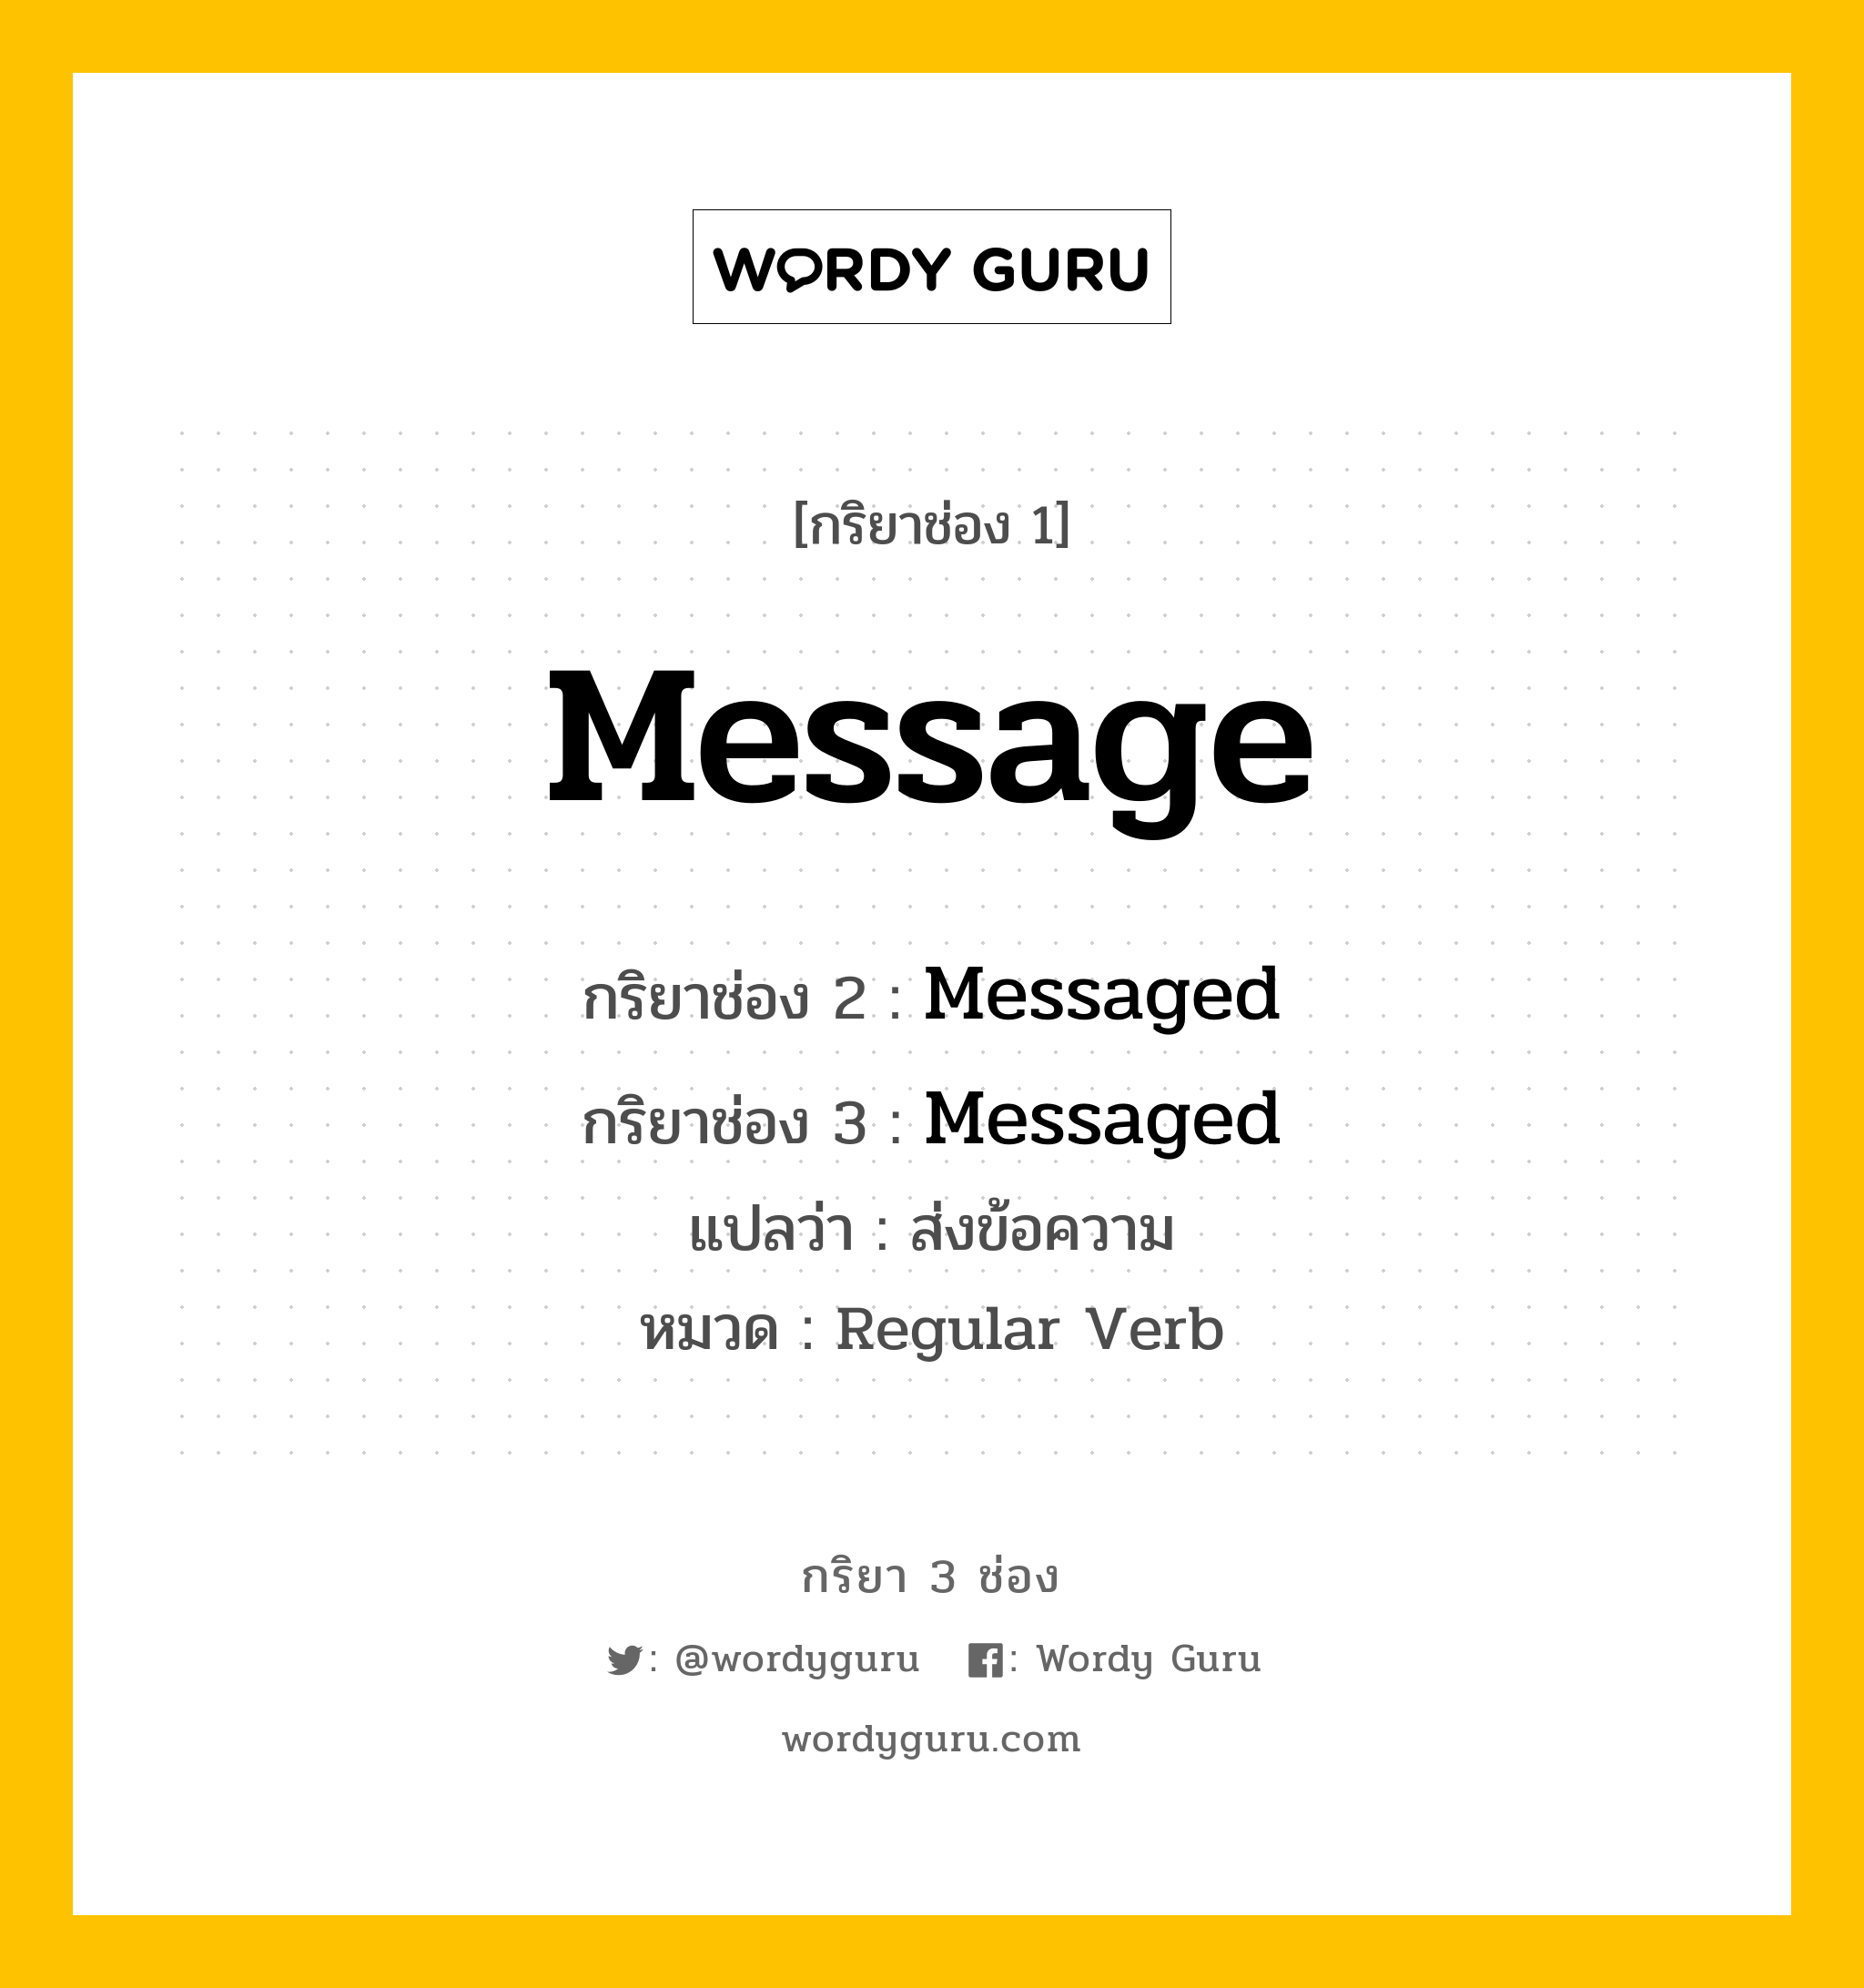 กริยา 3 ช่อง: Message ช่อง 2 Message ช่อง 3 คืออะไร, กริยาช่อง 1 Message กริยาช่อง 2 Messaged กริยาช่อง 3 Messaged แปลว่า ส่งข้อความ หมวด Regular Verb หมวด Regular Verb